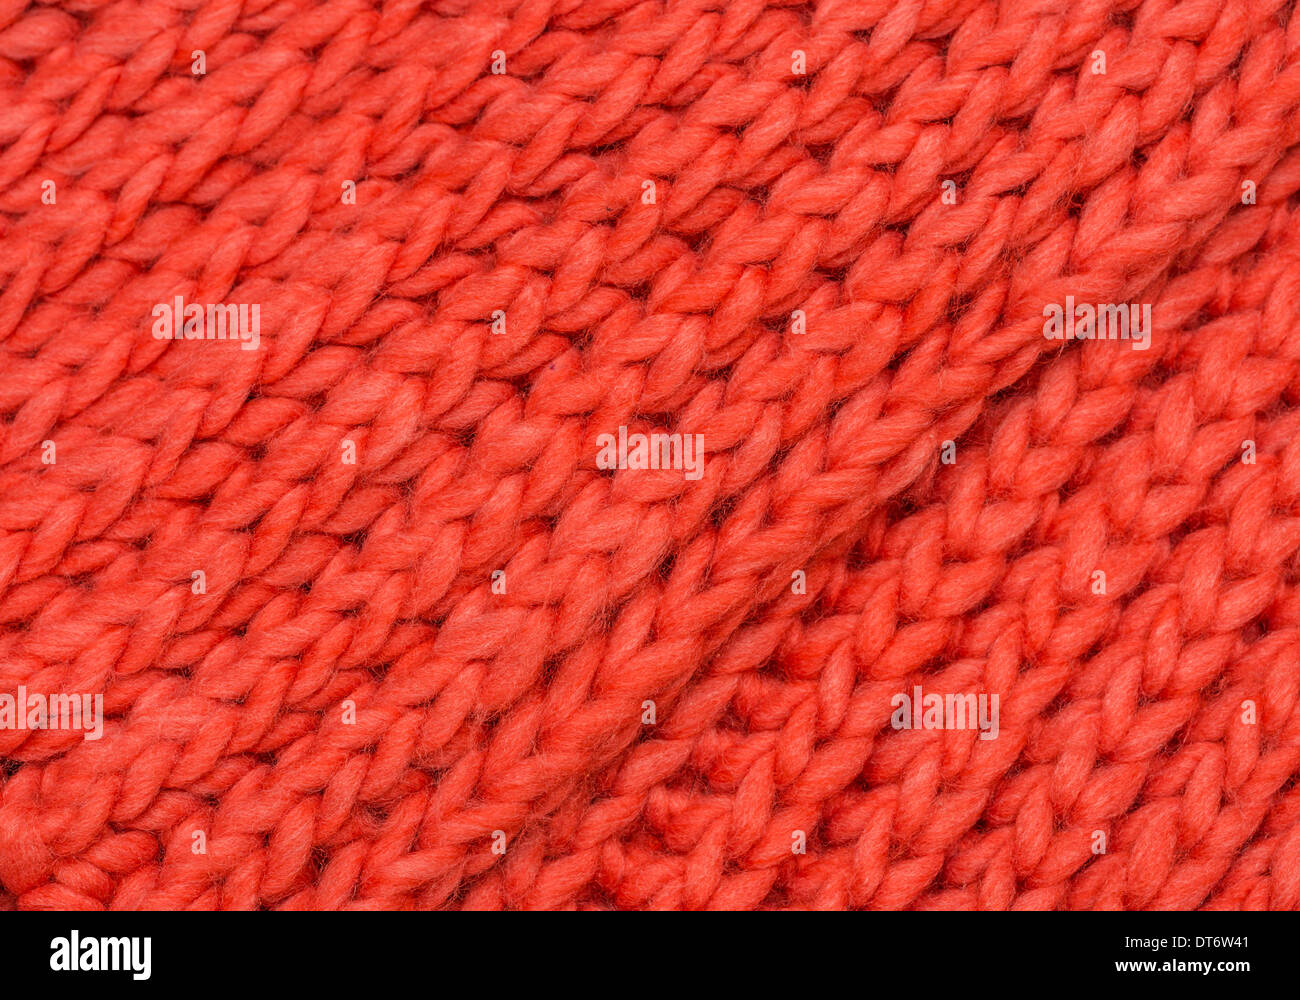 Rosso a maglia in lana merinos background stockinette stitch Foto Stock